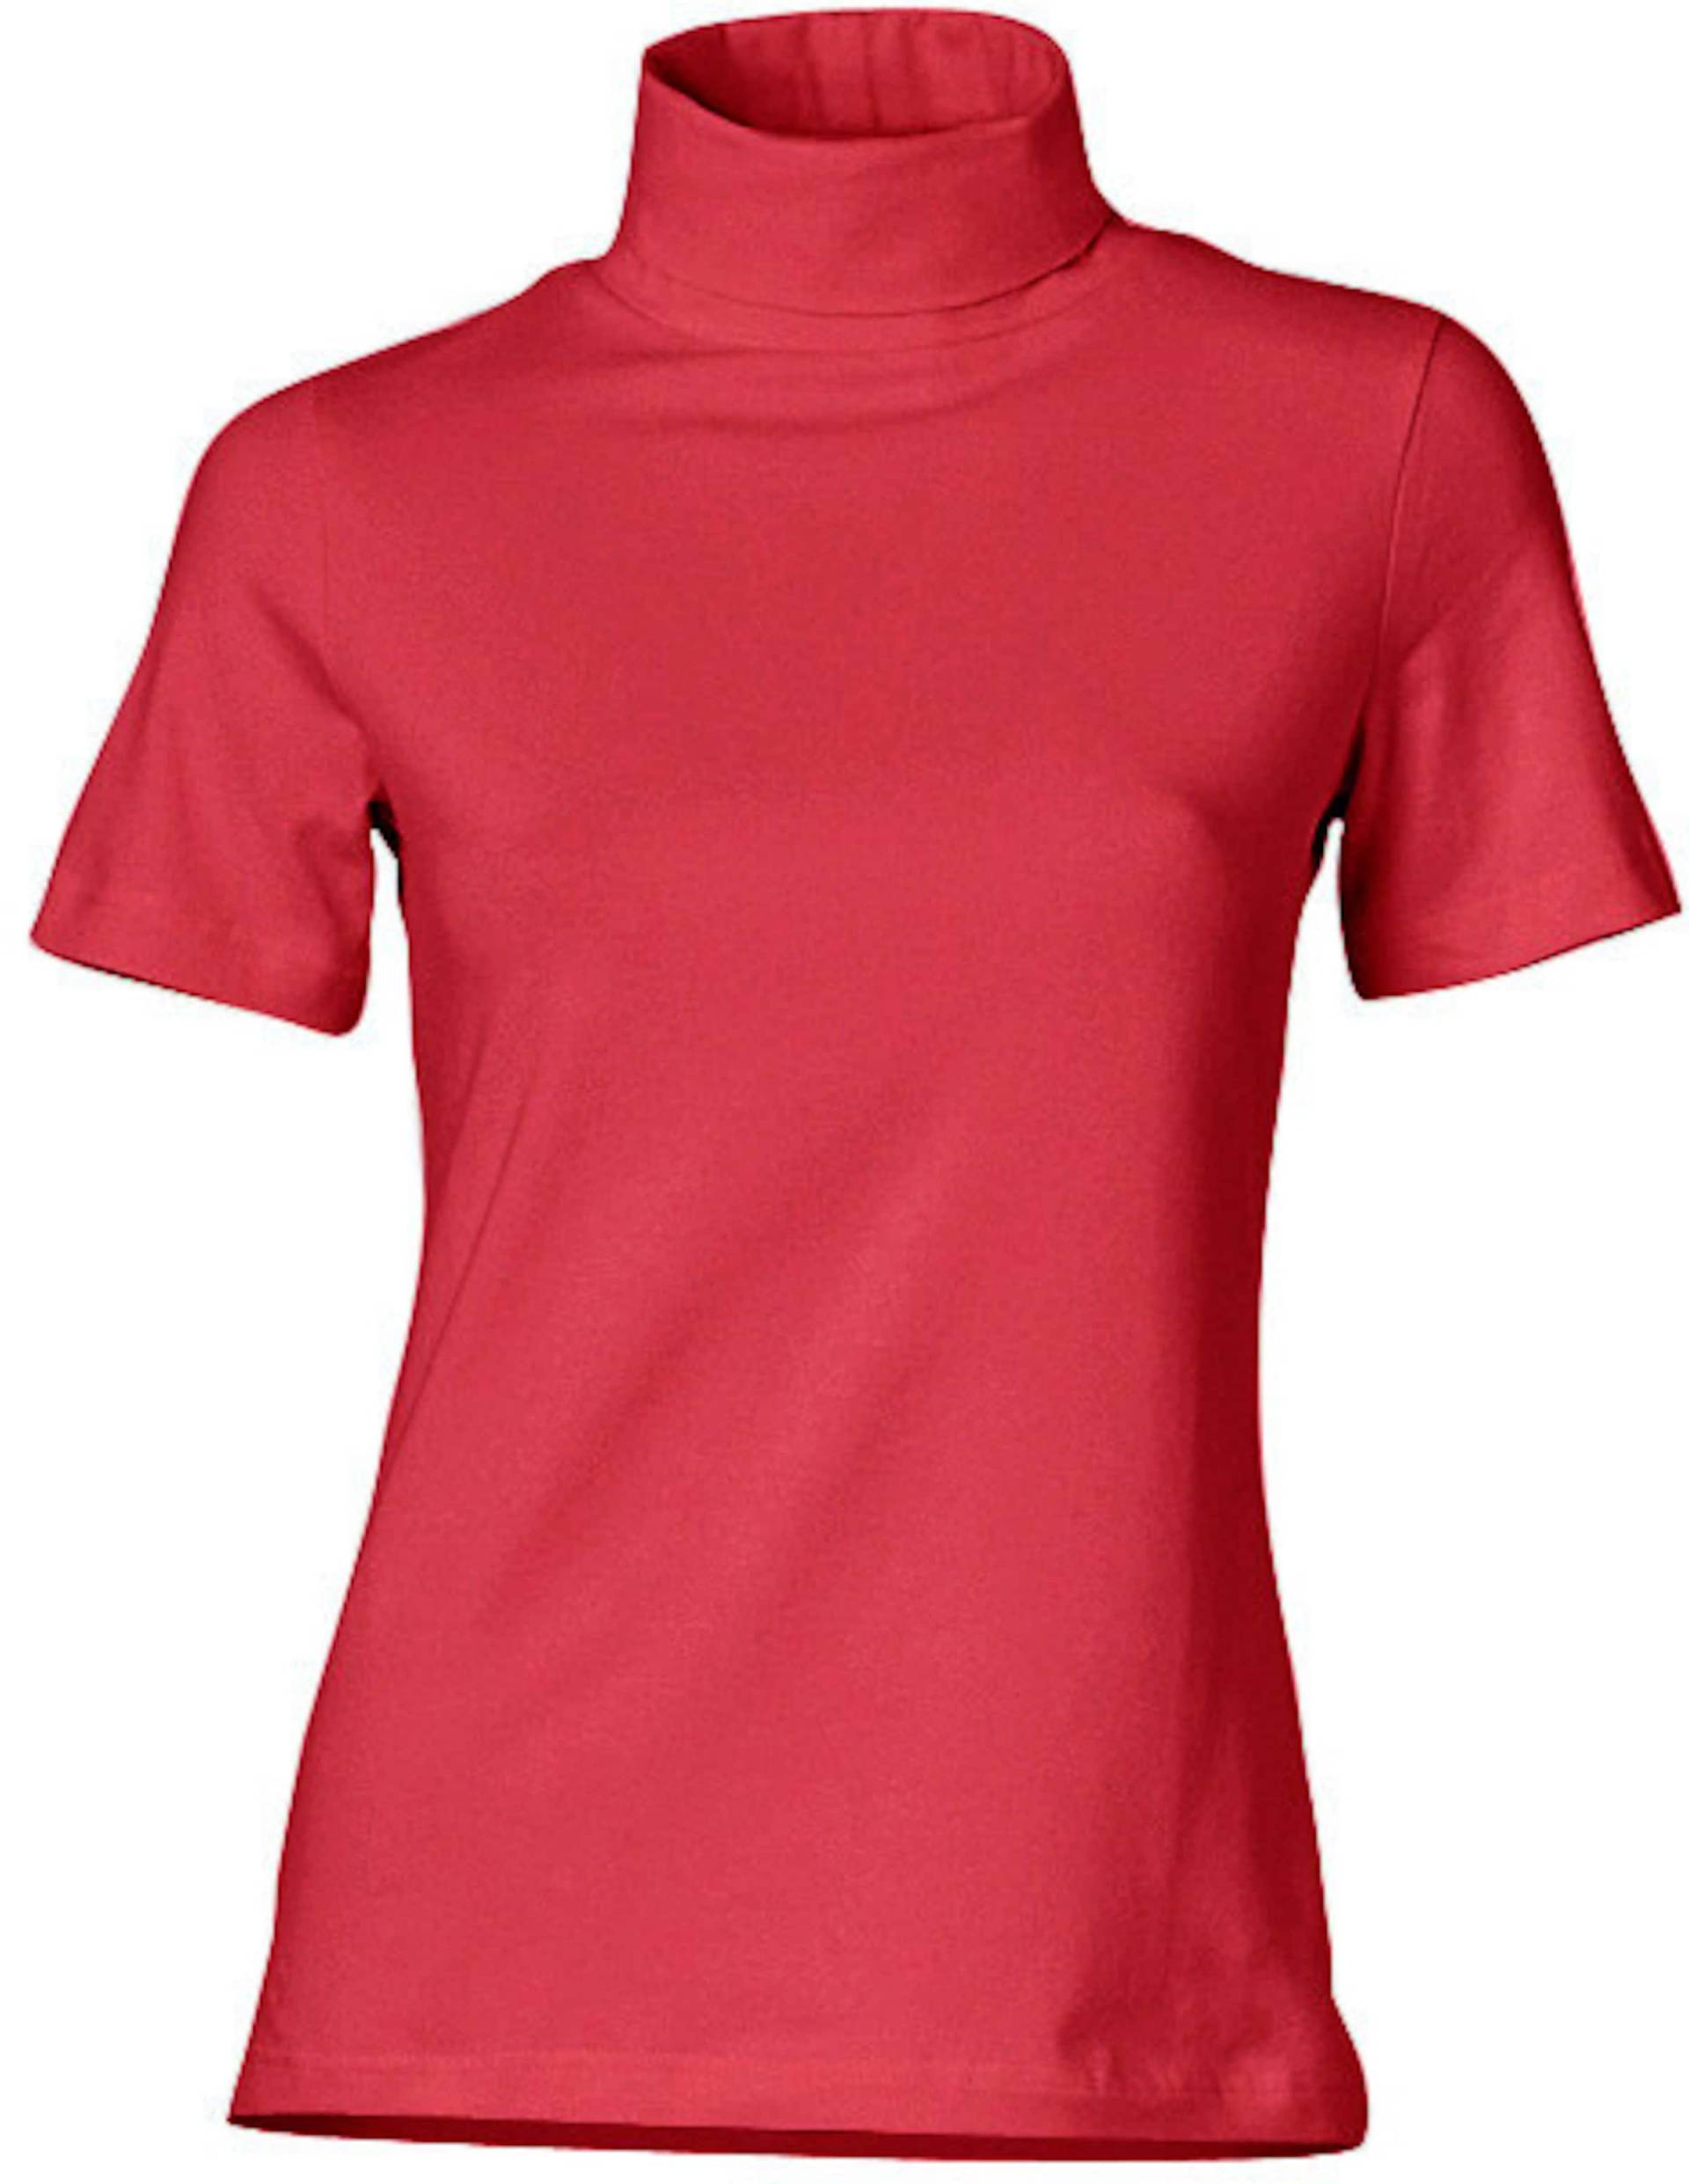 Rollkragen-Shirt in rot von heine